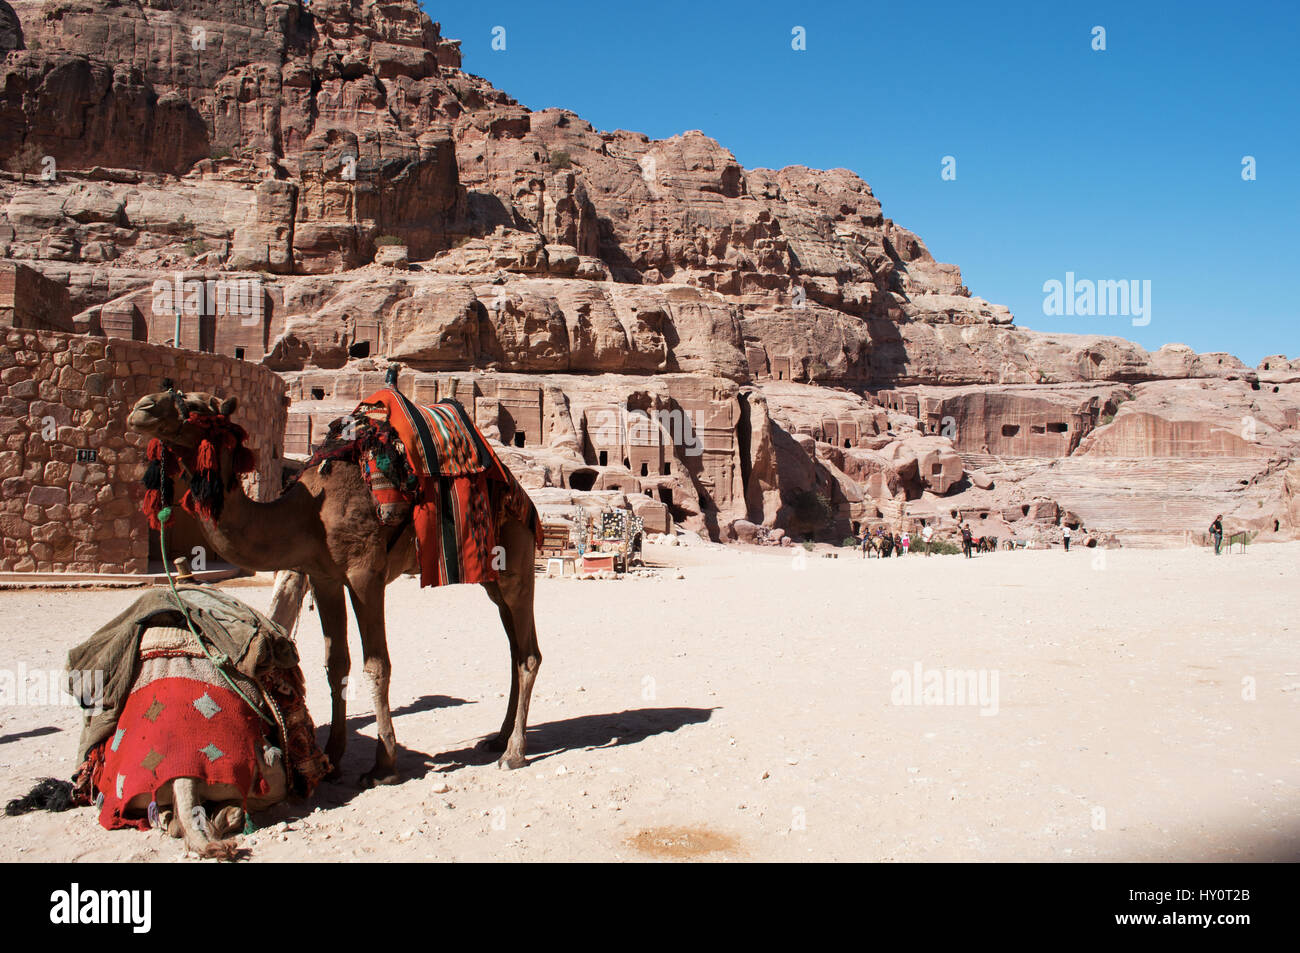 Jordanie : des chameaux en face de la rue des façades, rangée de tombes nabatéennes monumentale taillée dans la ville nabatéenne de Pétra archéologique Banque D'Images